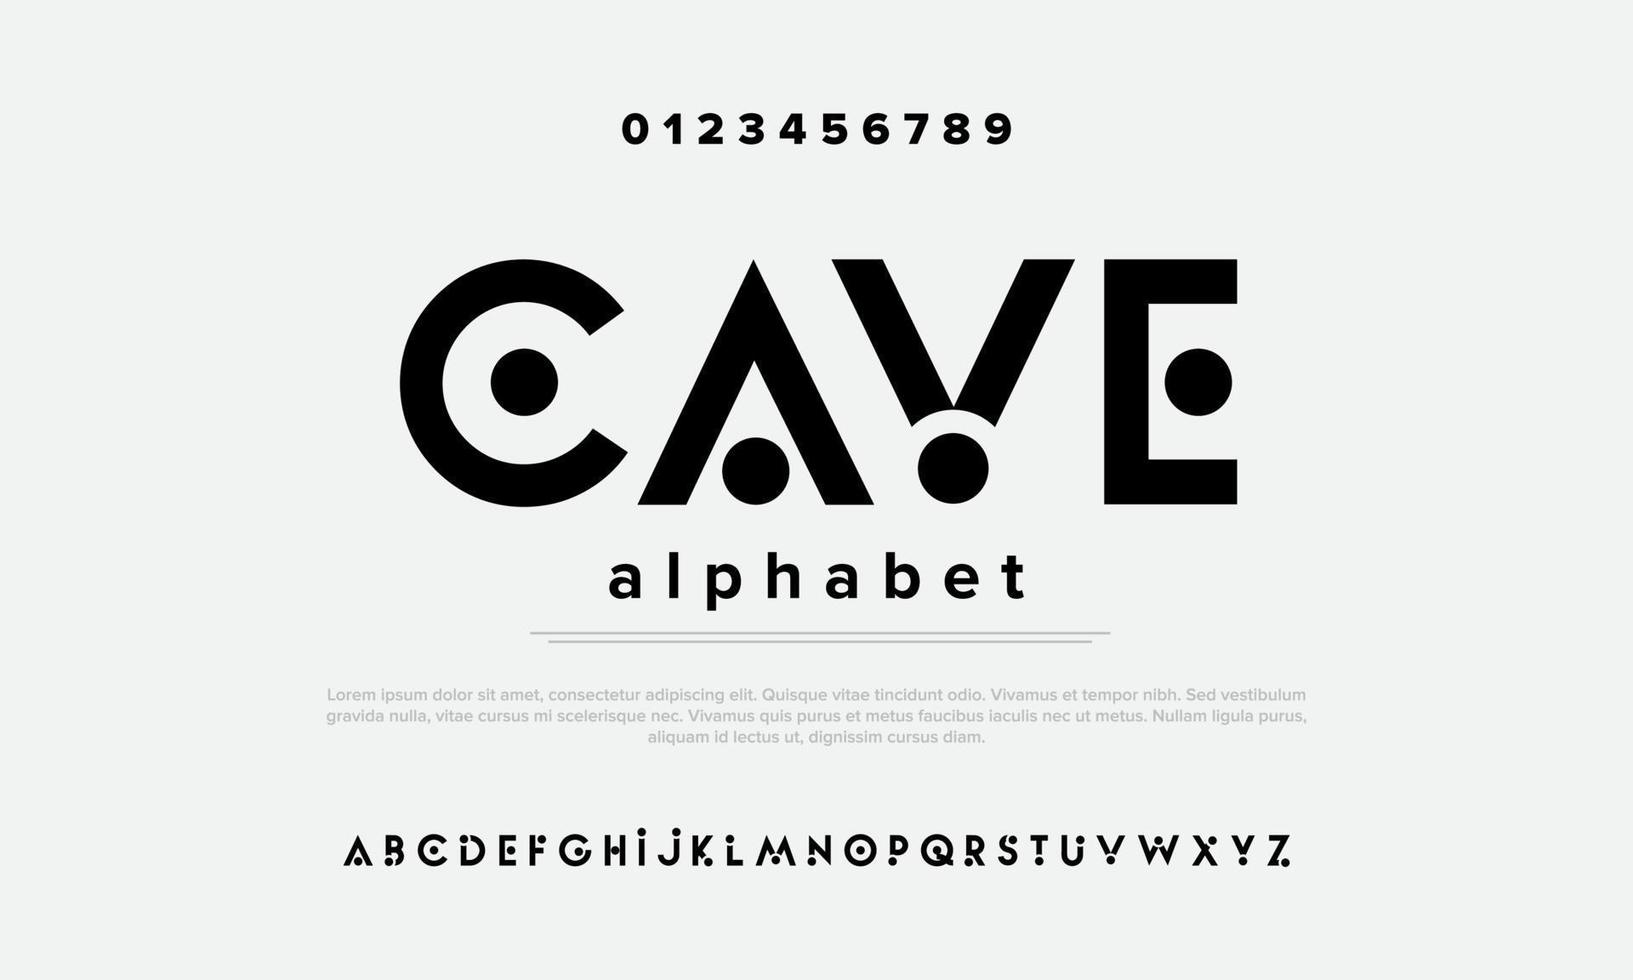 alfabeto simples moderno minimalista. tipografia urbana para esporte, moda, logotipo, digital, futurista. vetor de ilustração criativo alfabeto isolado.